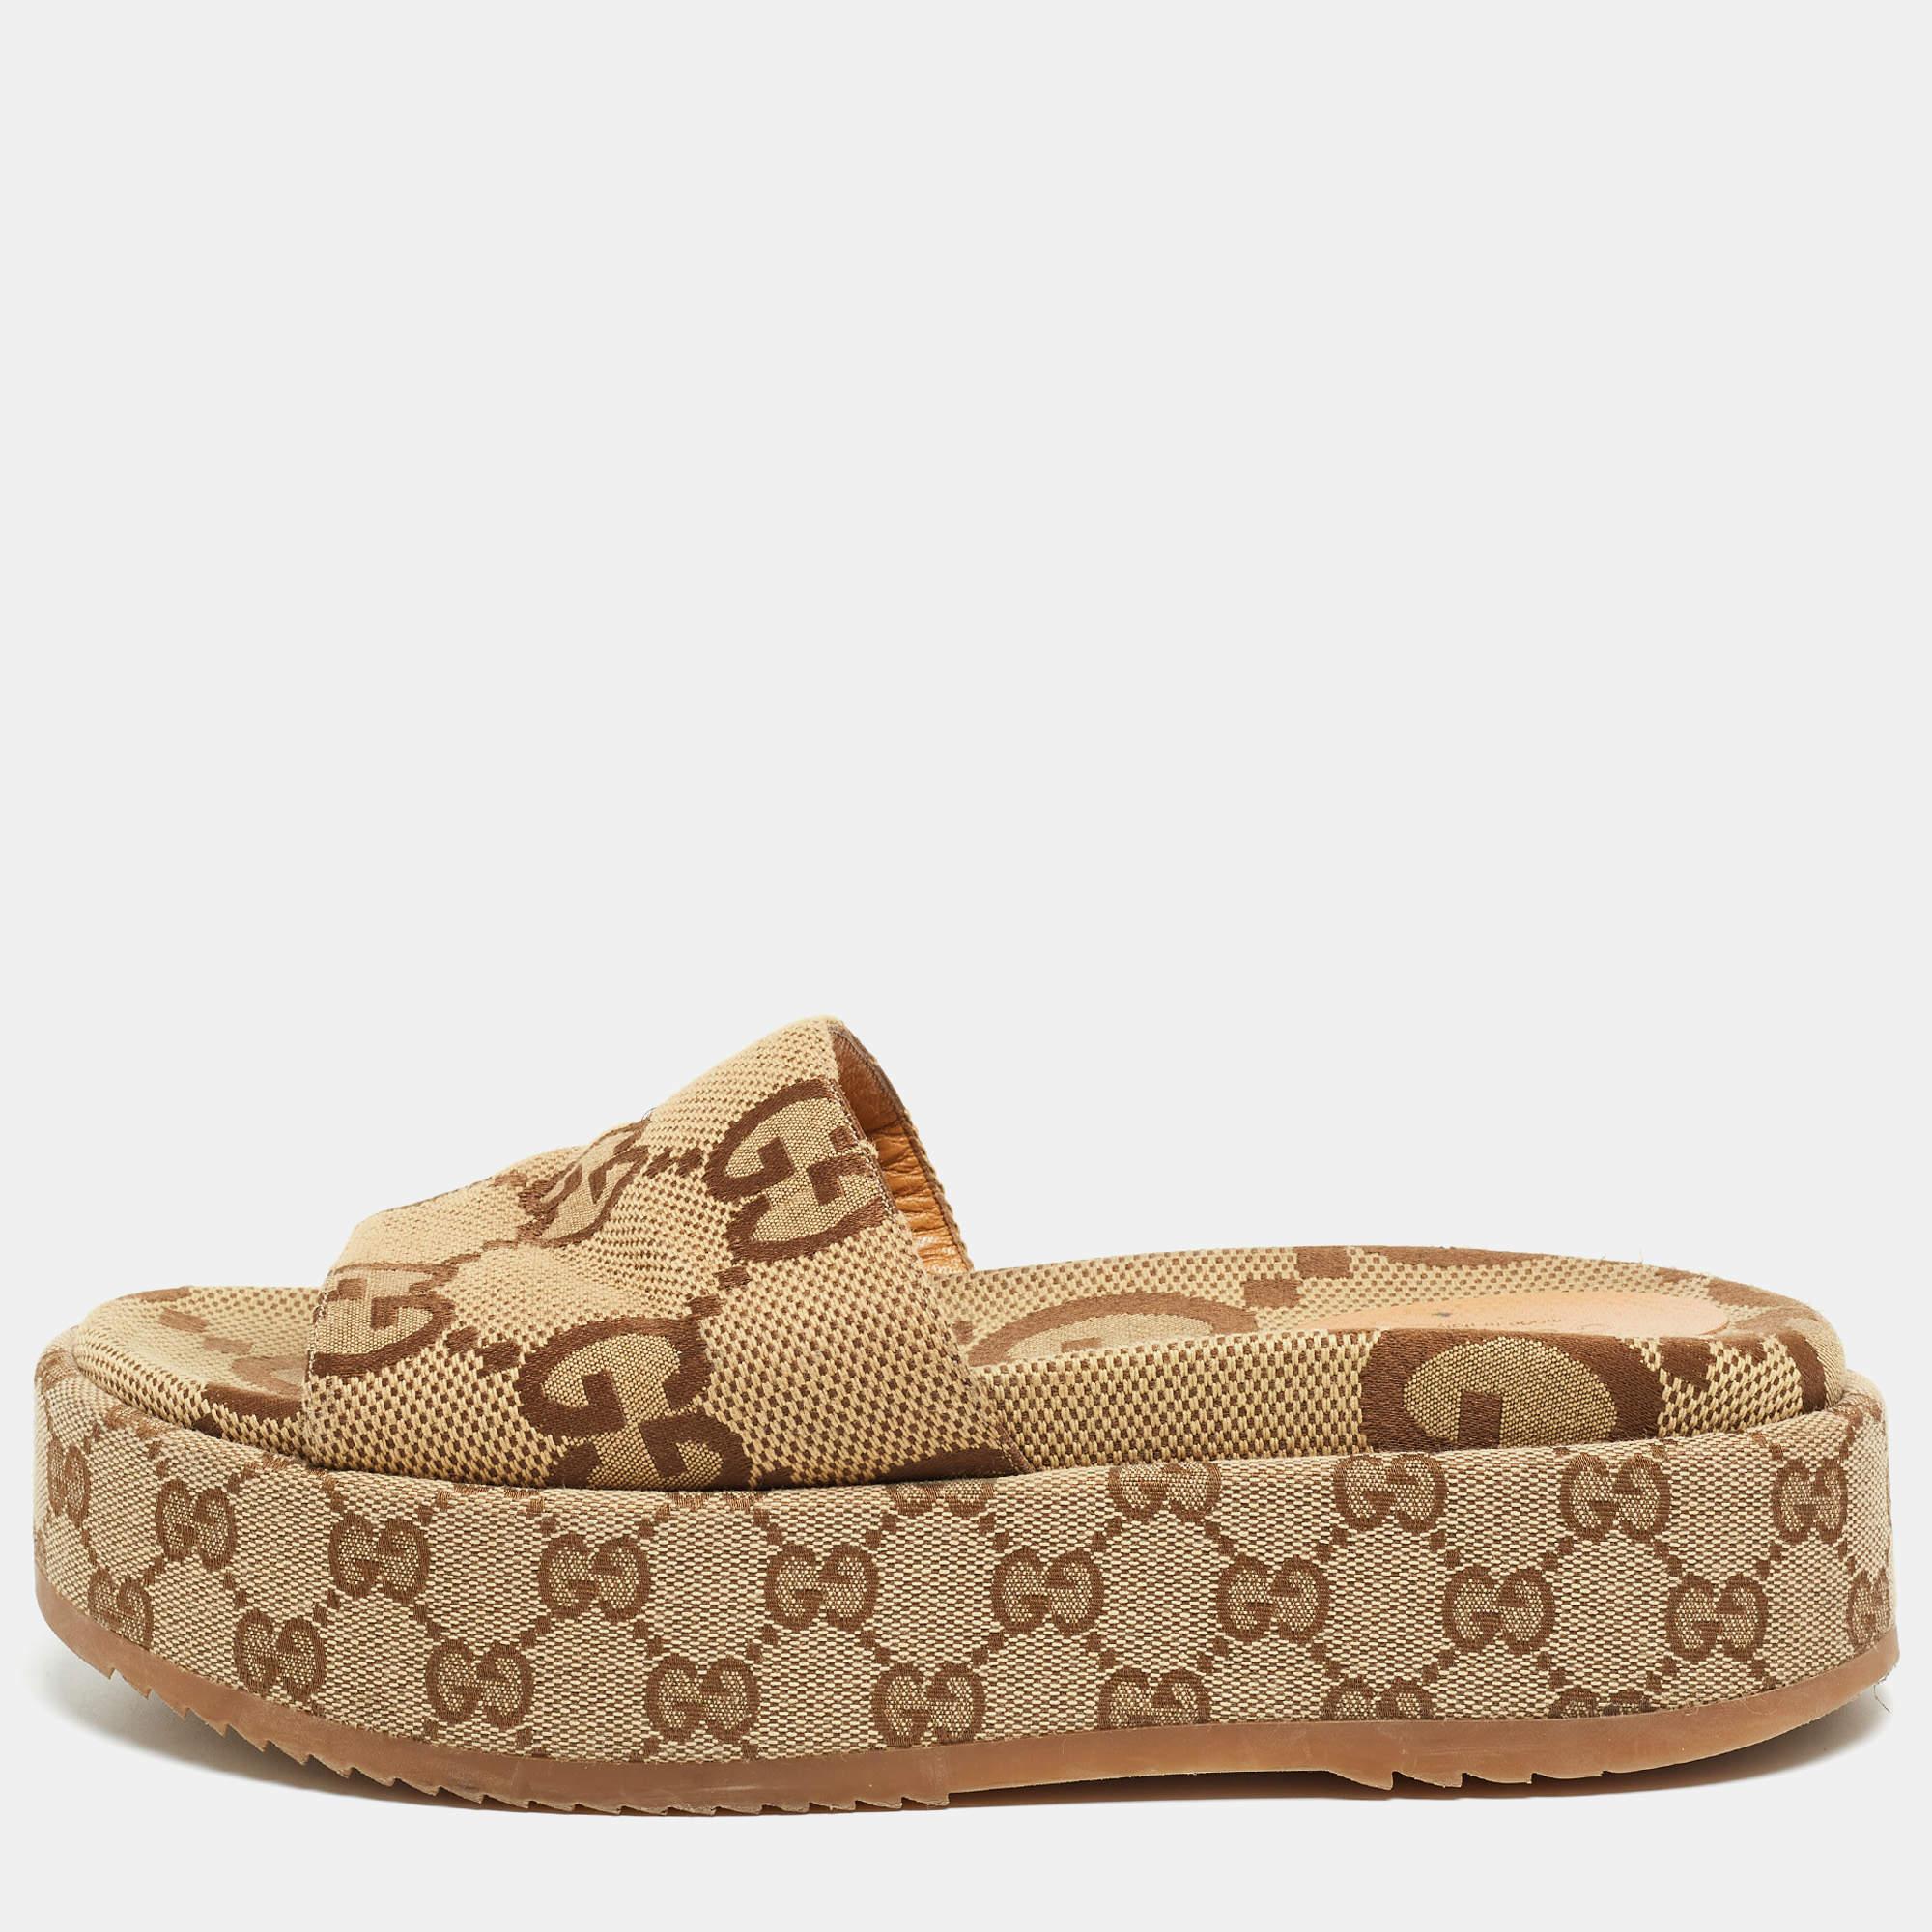 Gucci Brown/Beige GG Canvas Platform Slide Sandals Size 38.5 1